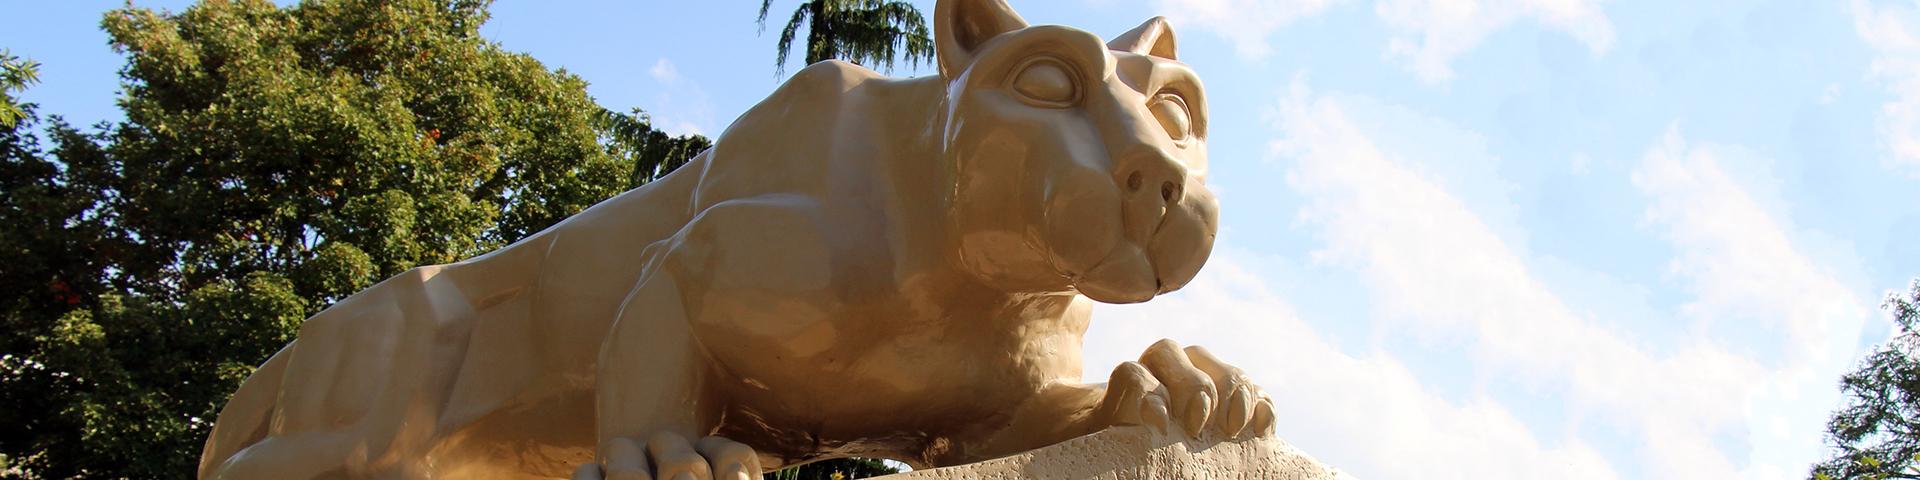 The Nittany Lion Shrine at Penn State Berks